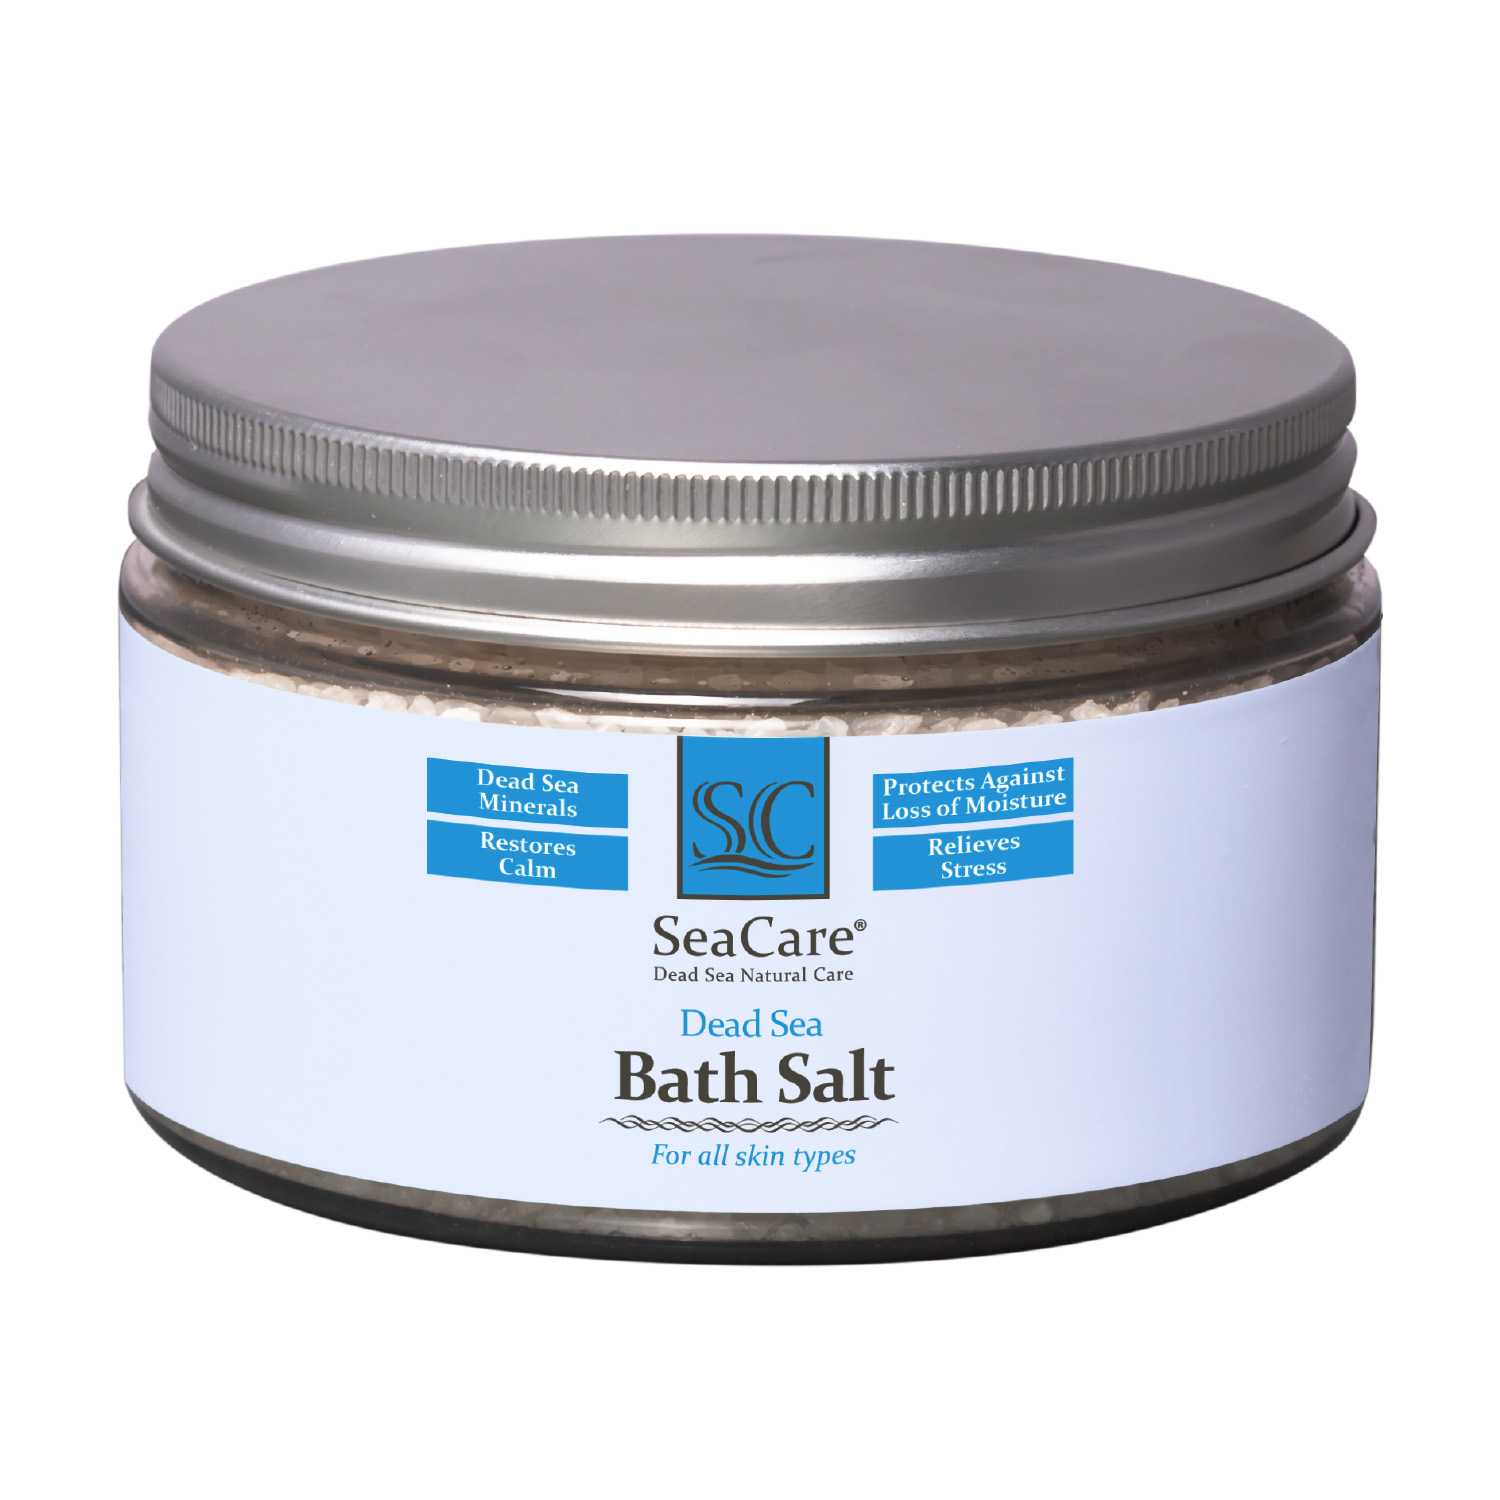 Соль для ванны SeaCare с минералами мертвого моря 300 г морская соль для ванн артколор сольздрав мертвого моря артколор сольздрав 800 г